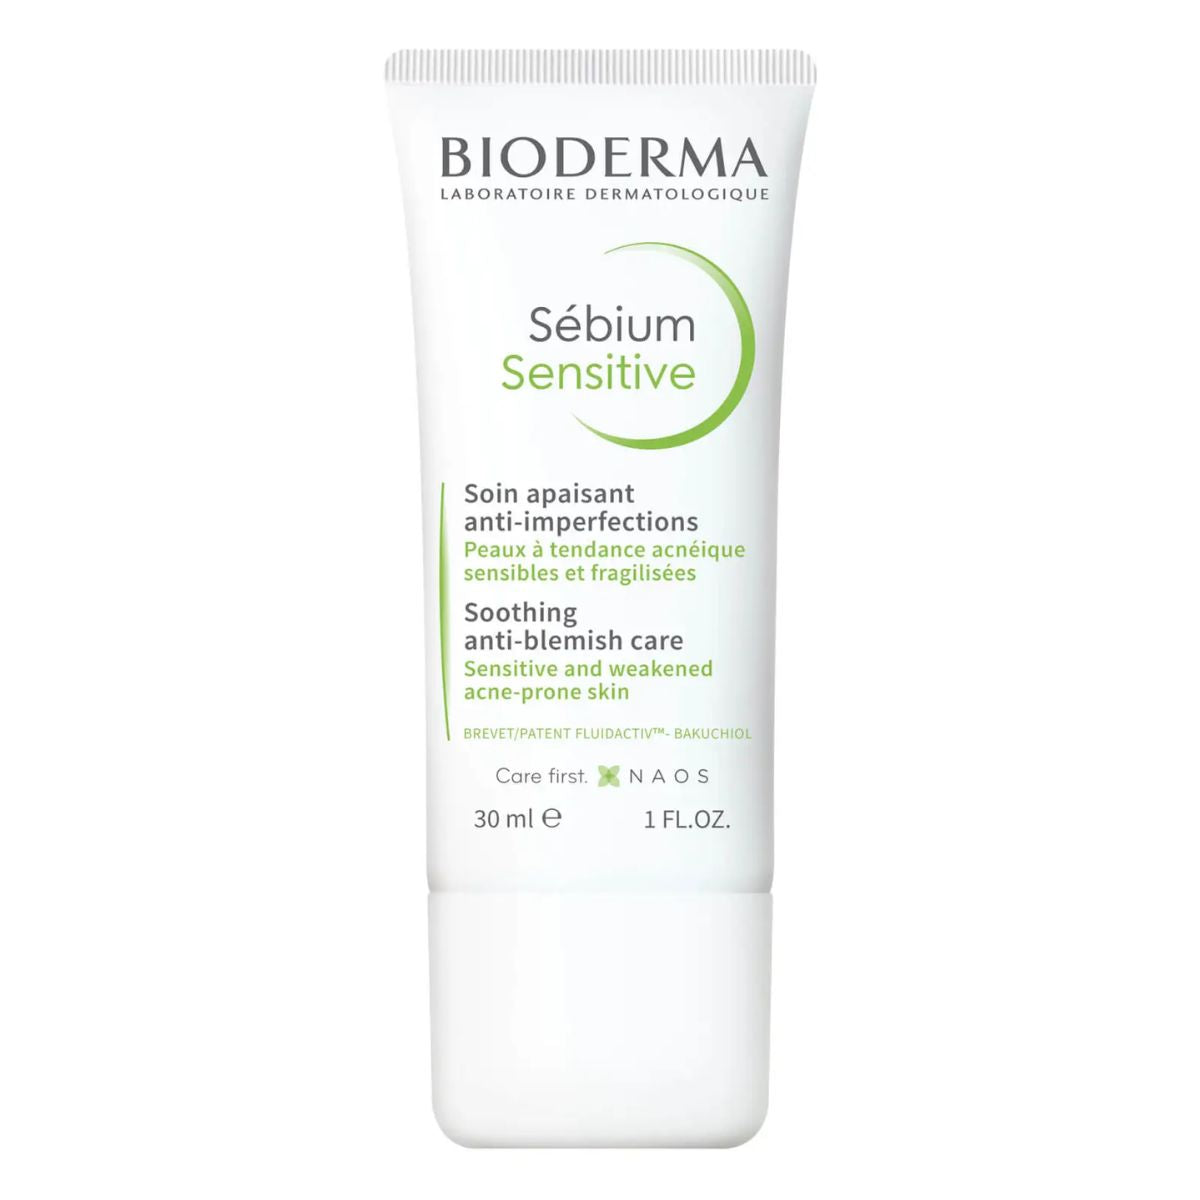 Bioderma Sebium Sensitive Soothing Anti-blemish Care